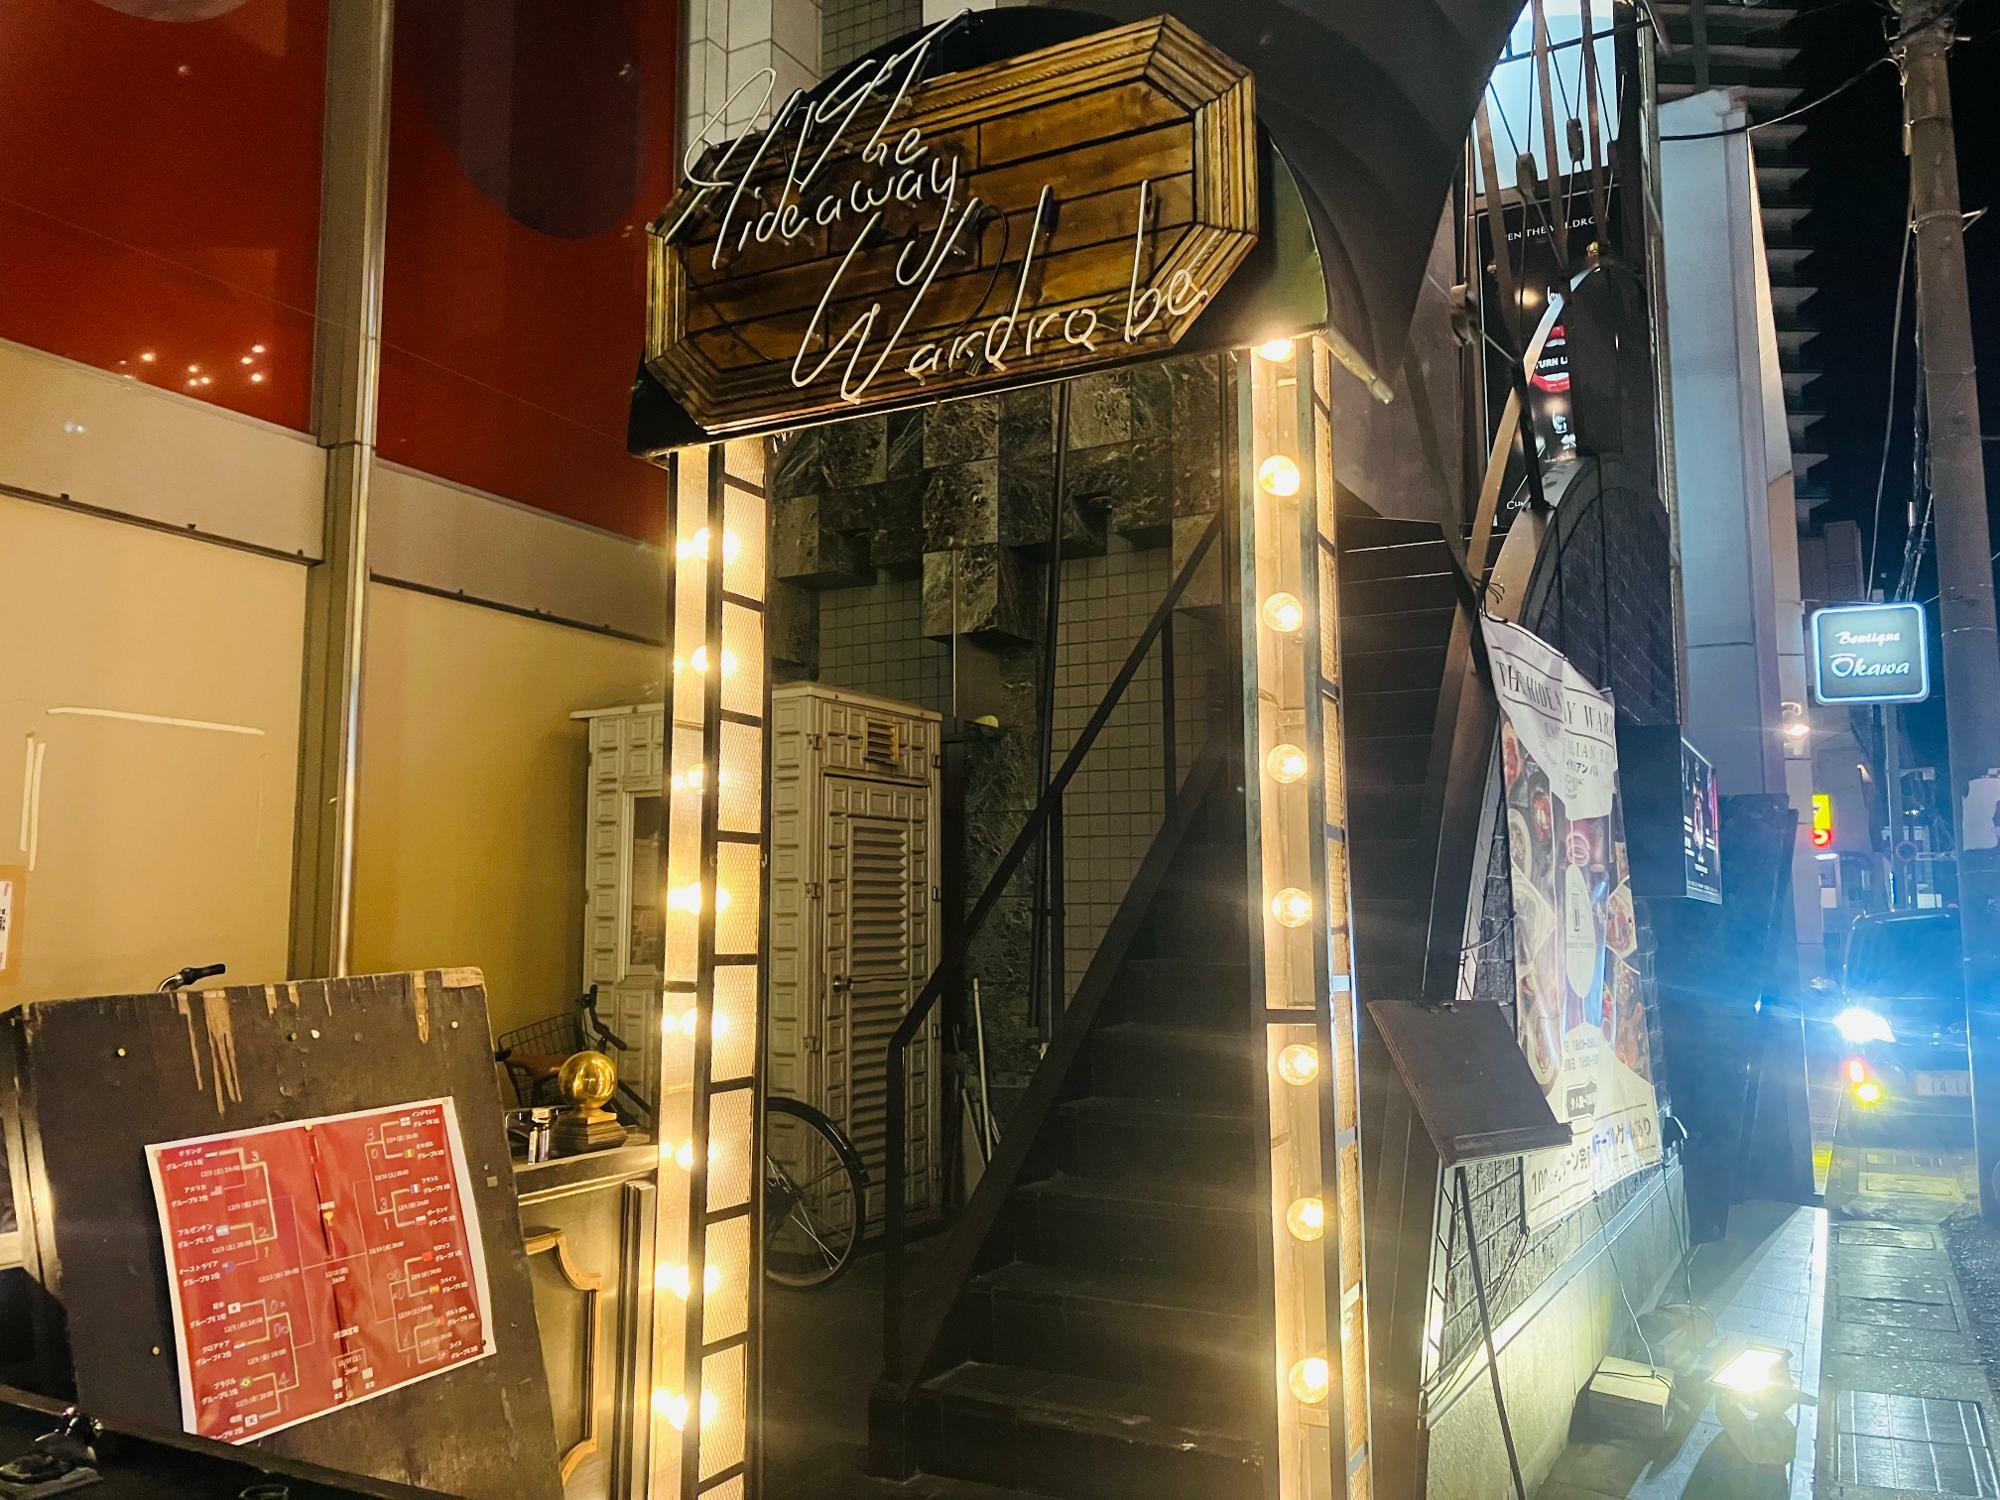 ※こちらは、「THE HIDEAWAY WARDROBE」さんのお店入り口へと続く階段。